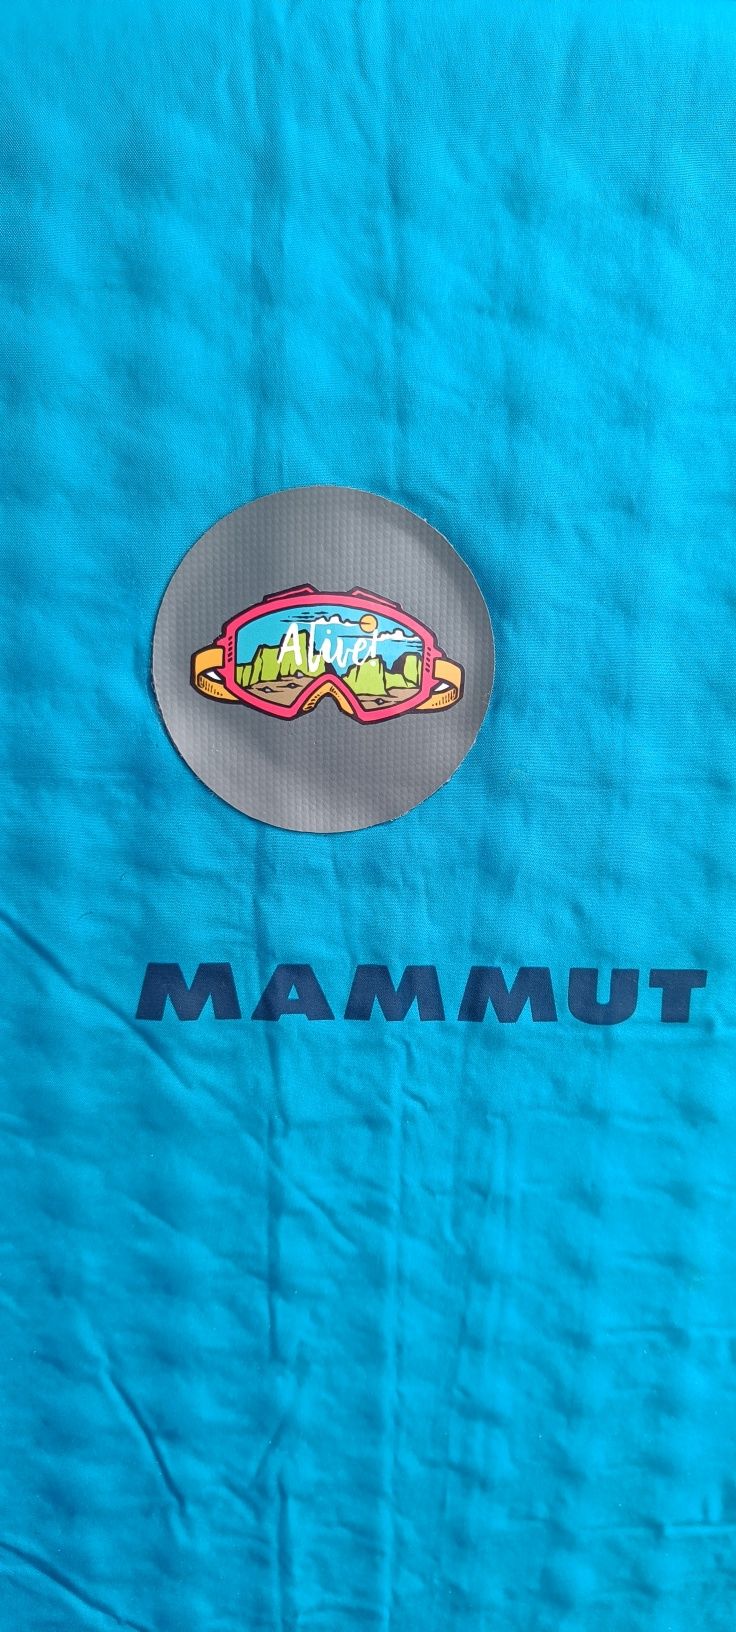 Коврик туристичний | Mammut Lahar Mat EMT| 3 сезони